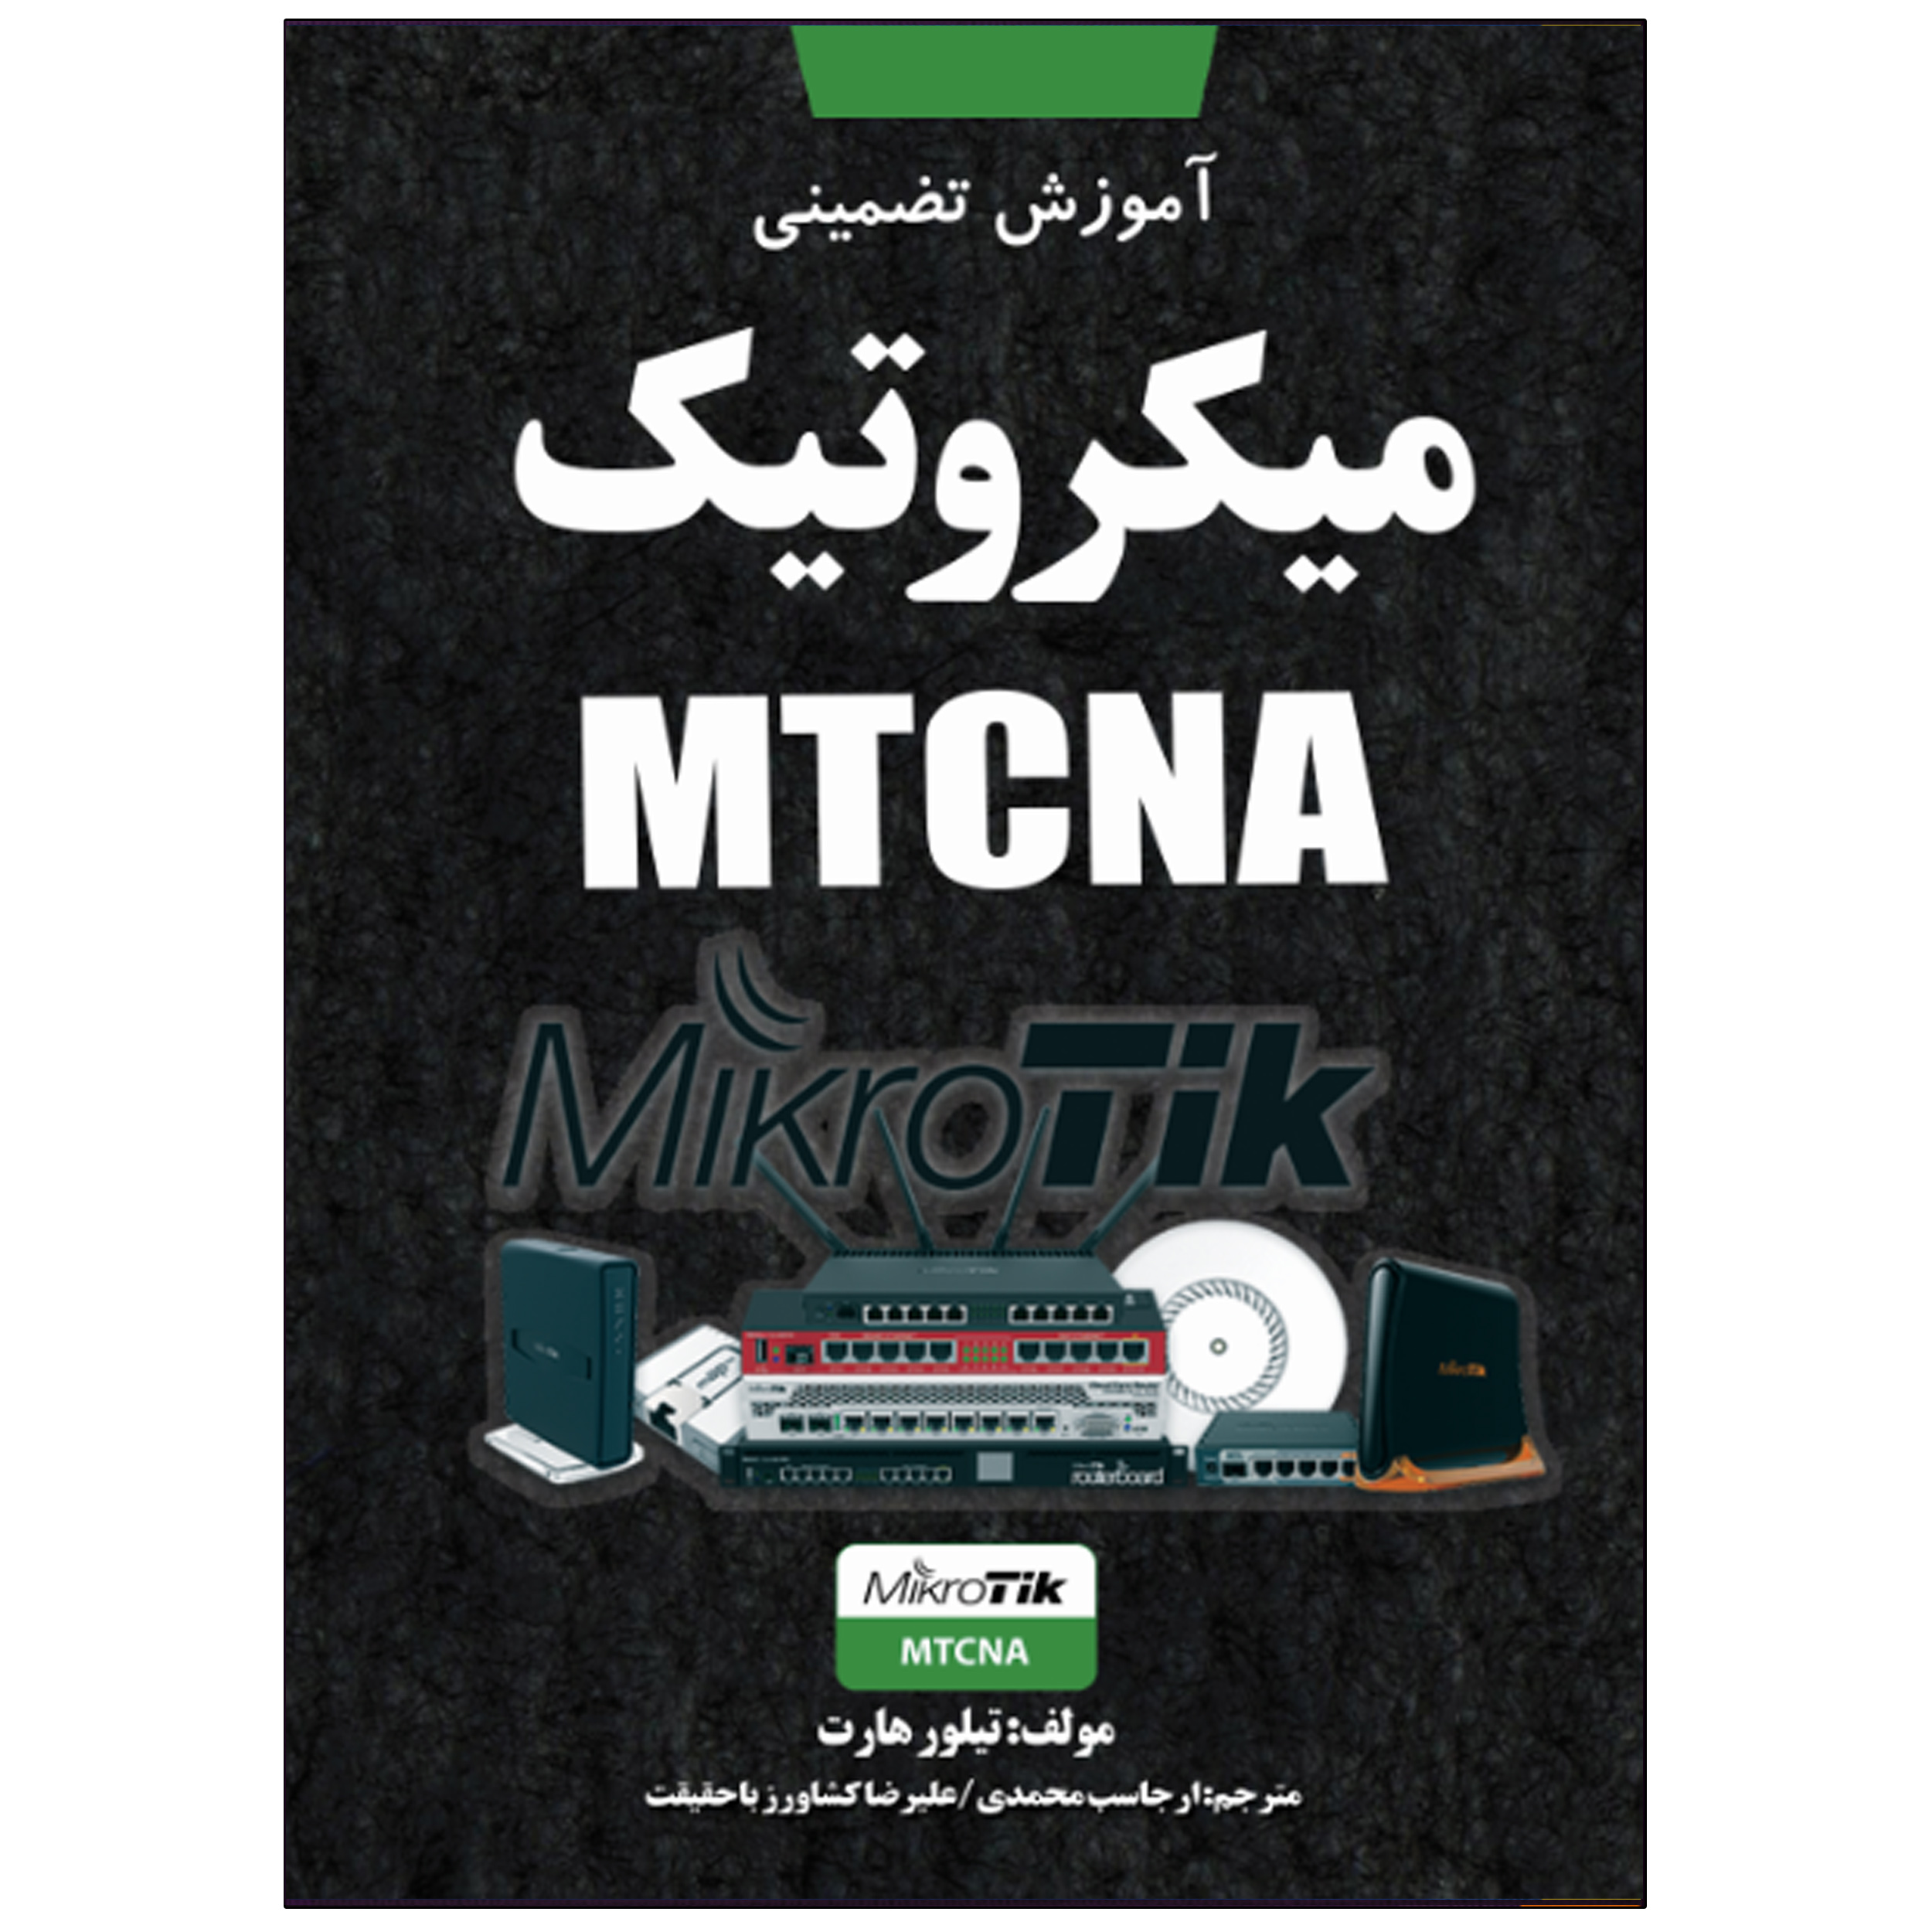 کتاب آموزش تضمینی میکروتیک MTCNA اثر تیلور هارت انتشارات نبض دانش